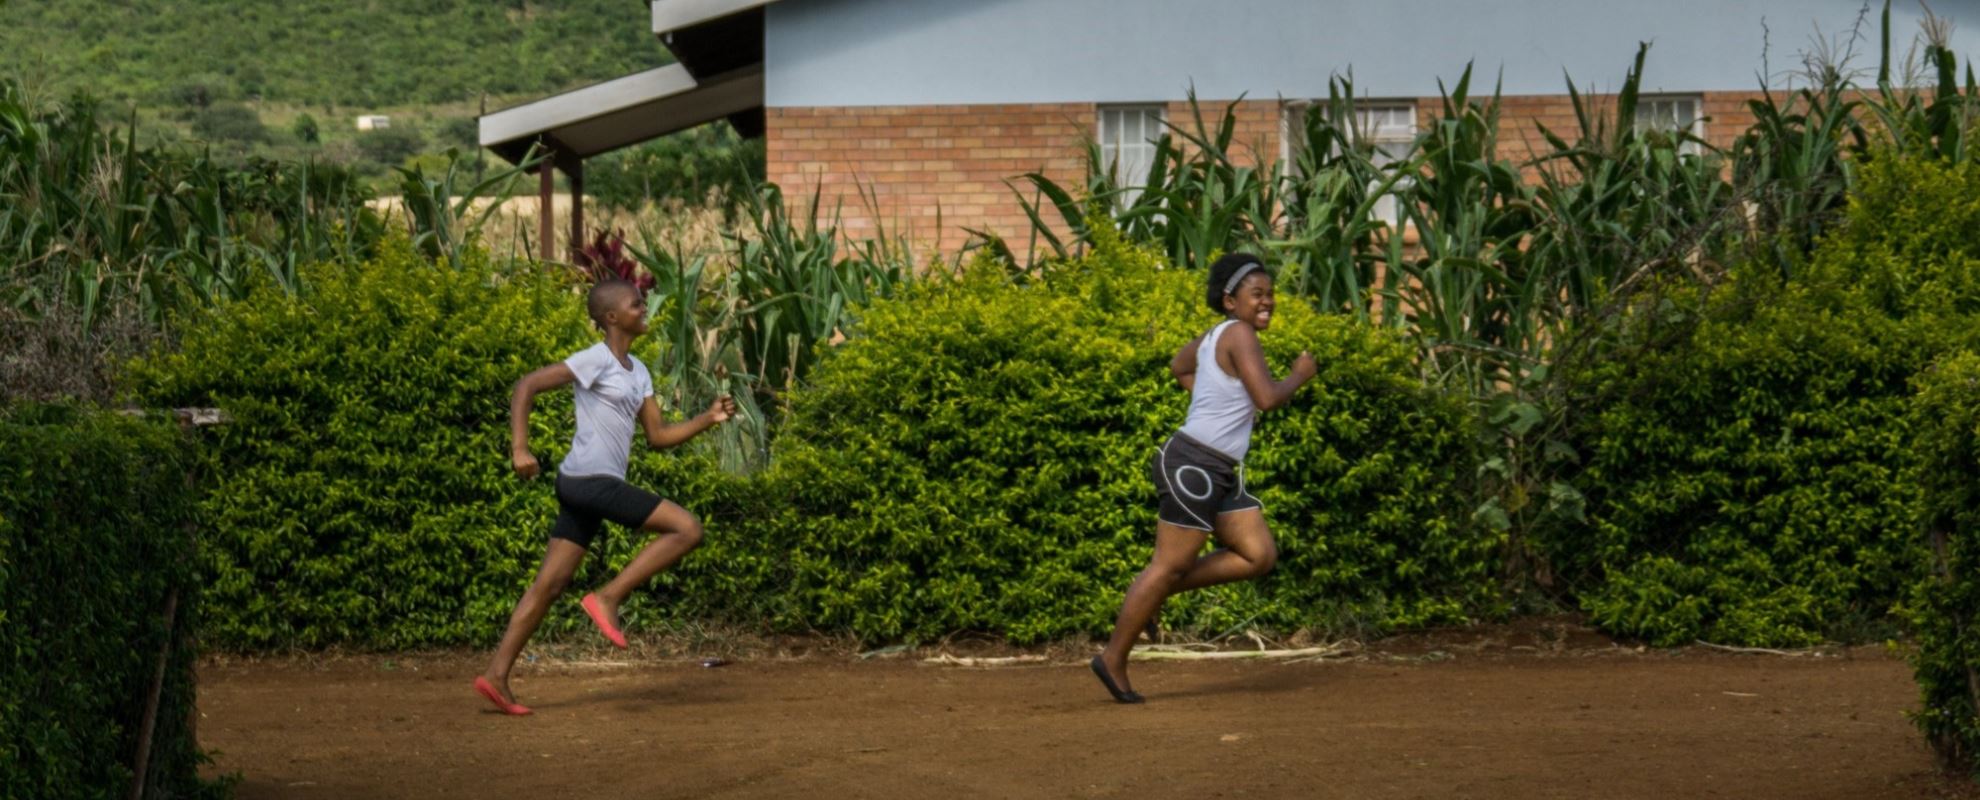 Sist Lungile var med i et løp vant hun. Hun elsker å løpe. Foto: William Jobling